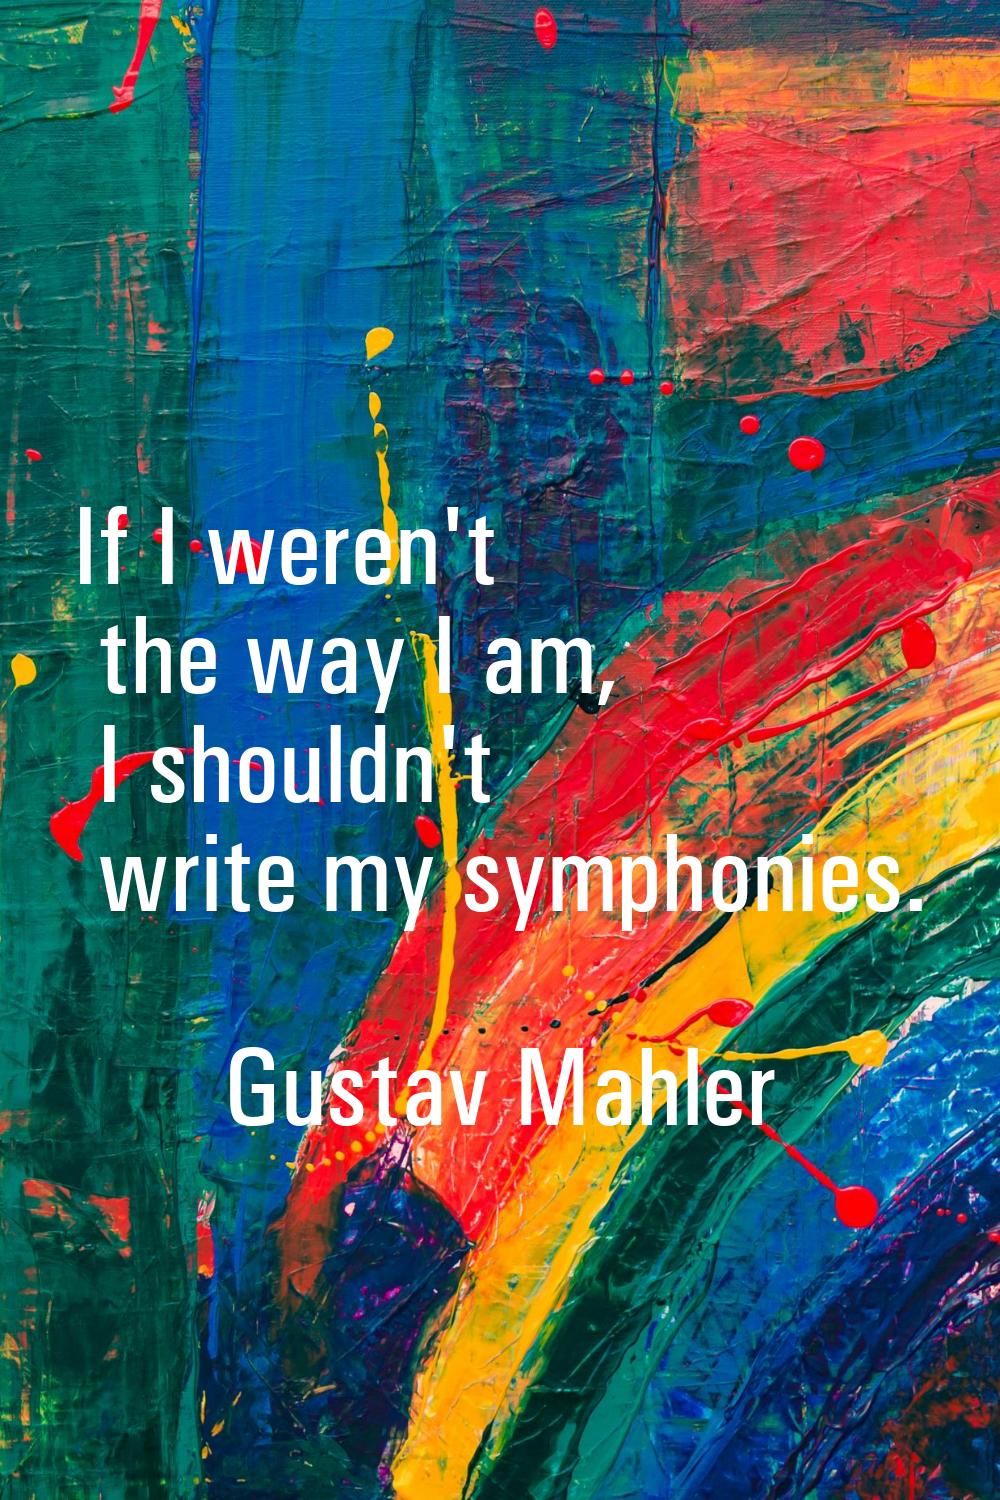 If I weren't the way I am, I shouldn't write my symphonies.